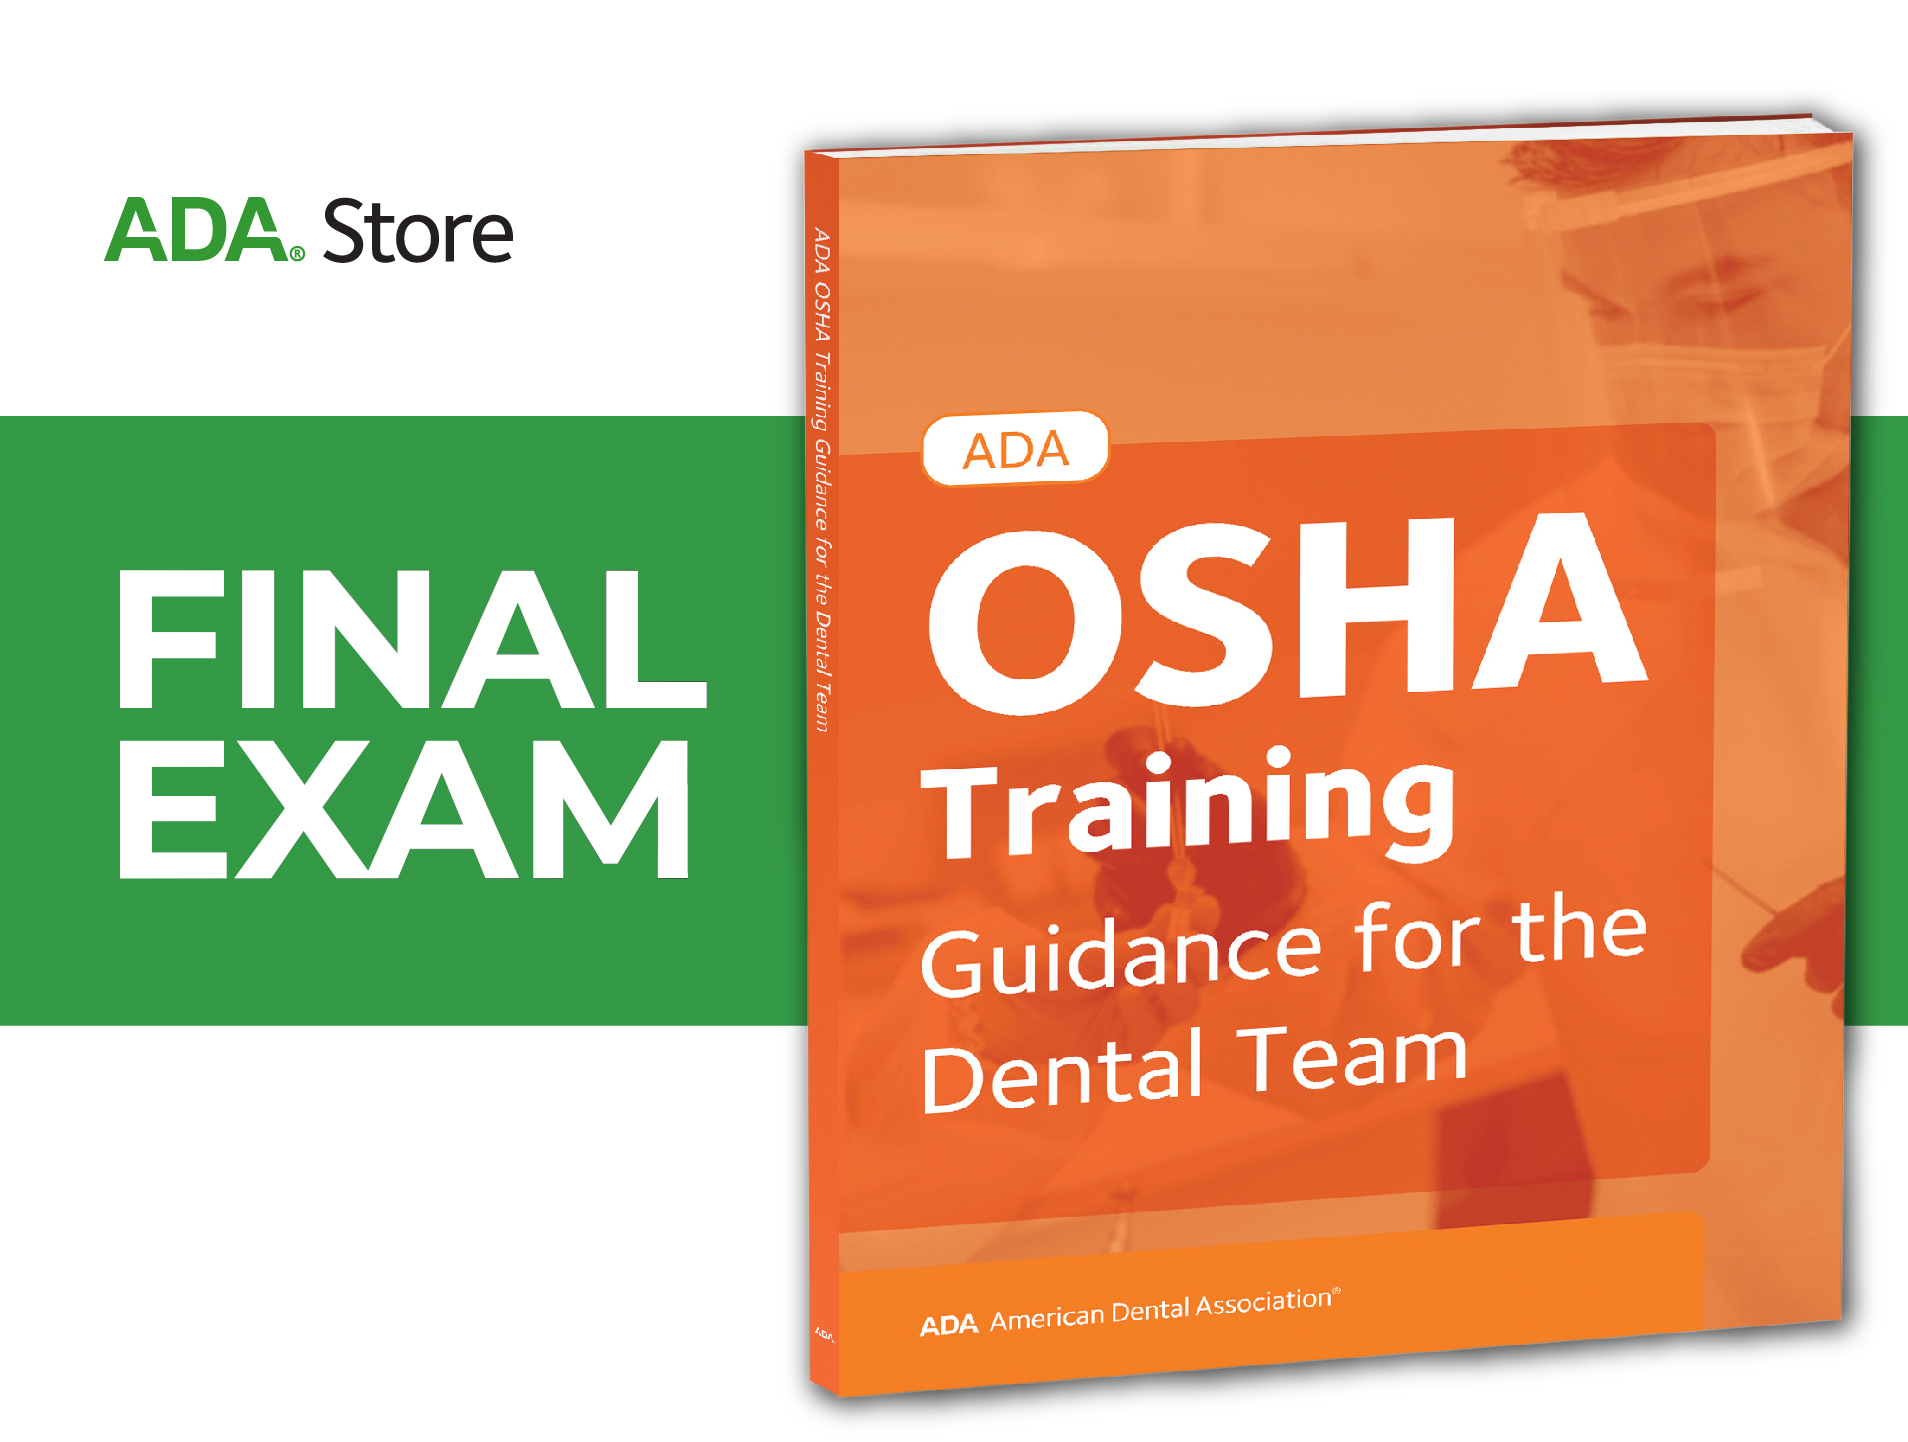 Final Exam — OSHA Training: Guidance for the Dental Team Quiz (ADA Store)